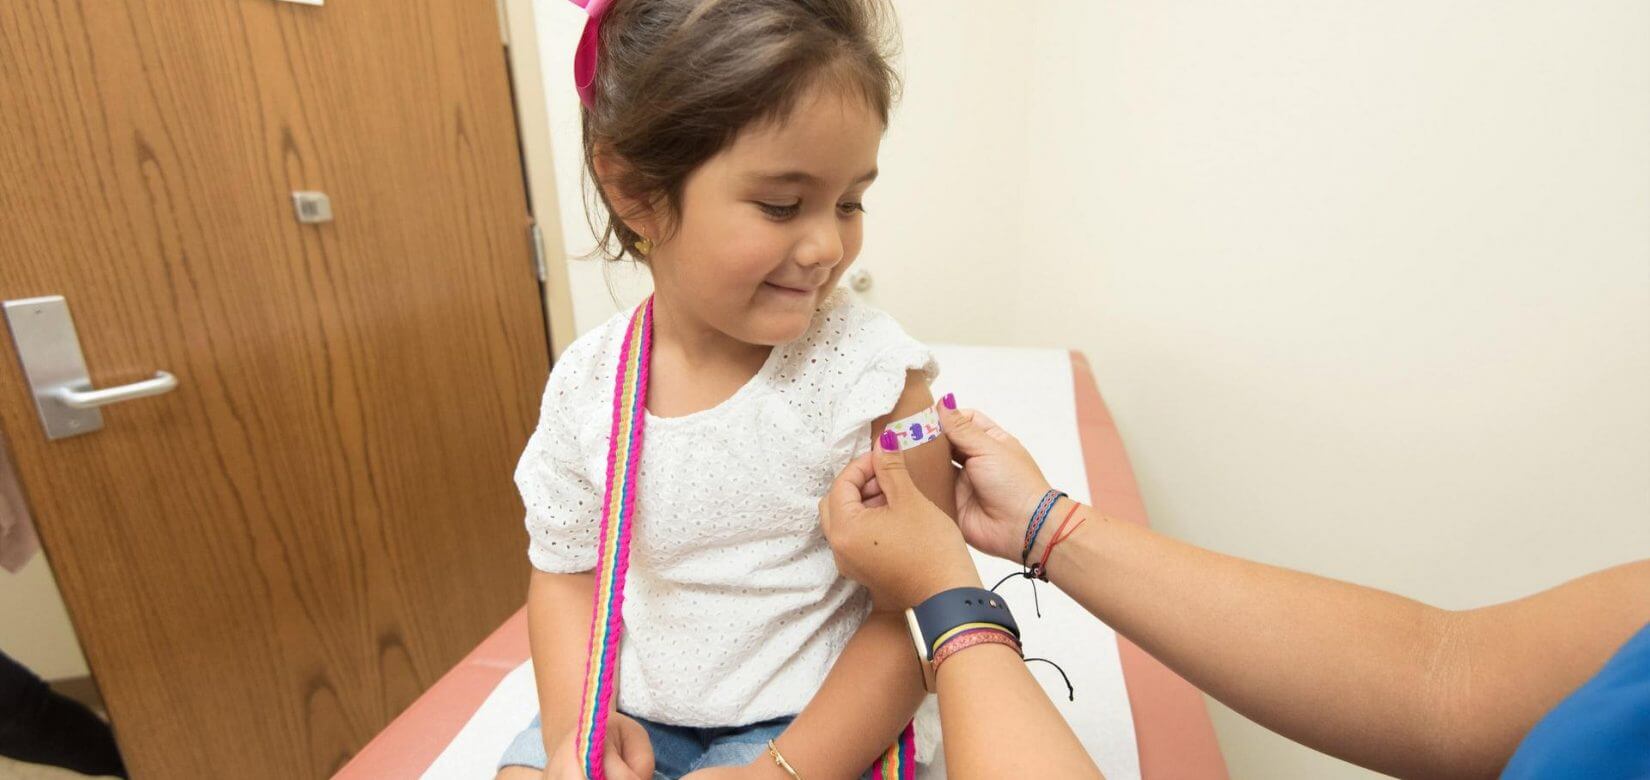 Θέλετε να εμβολιάσετε το παιδί σας; Διαθέσιμα από σήμερα 40.000 νέα ραντεβού στην Αττική